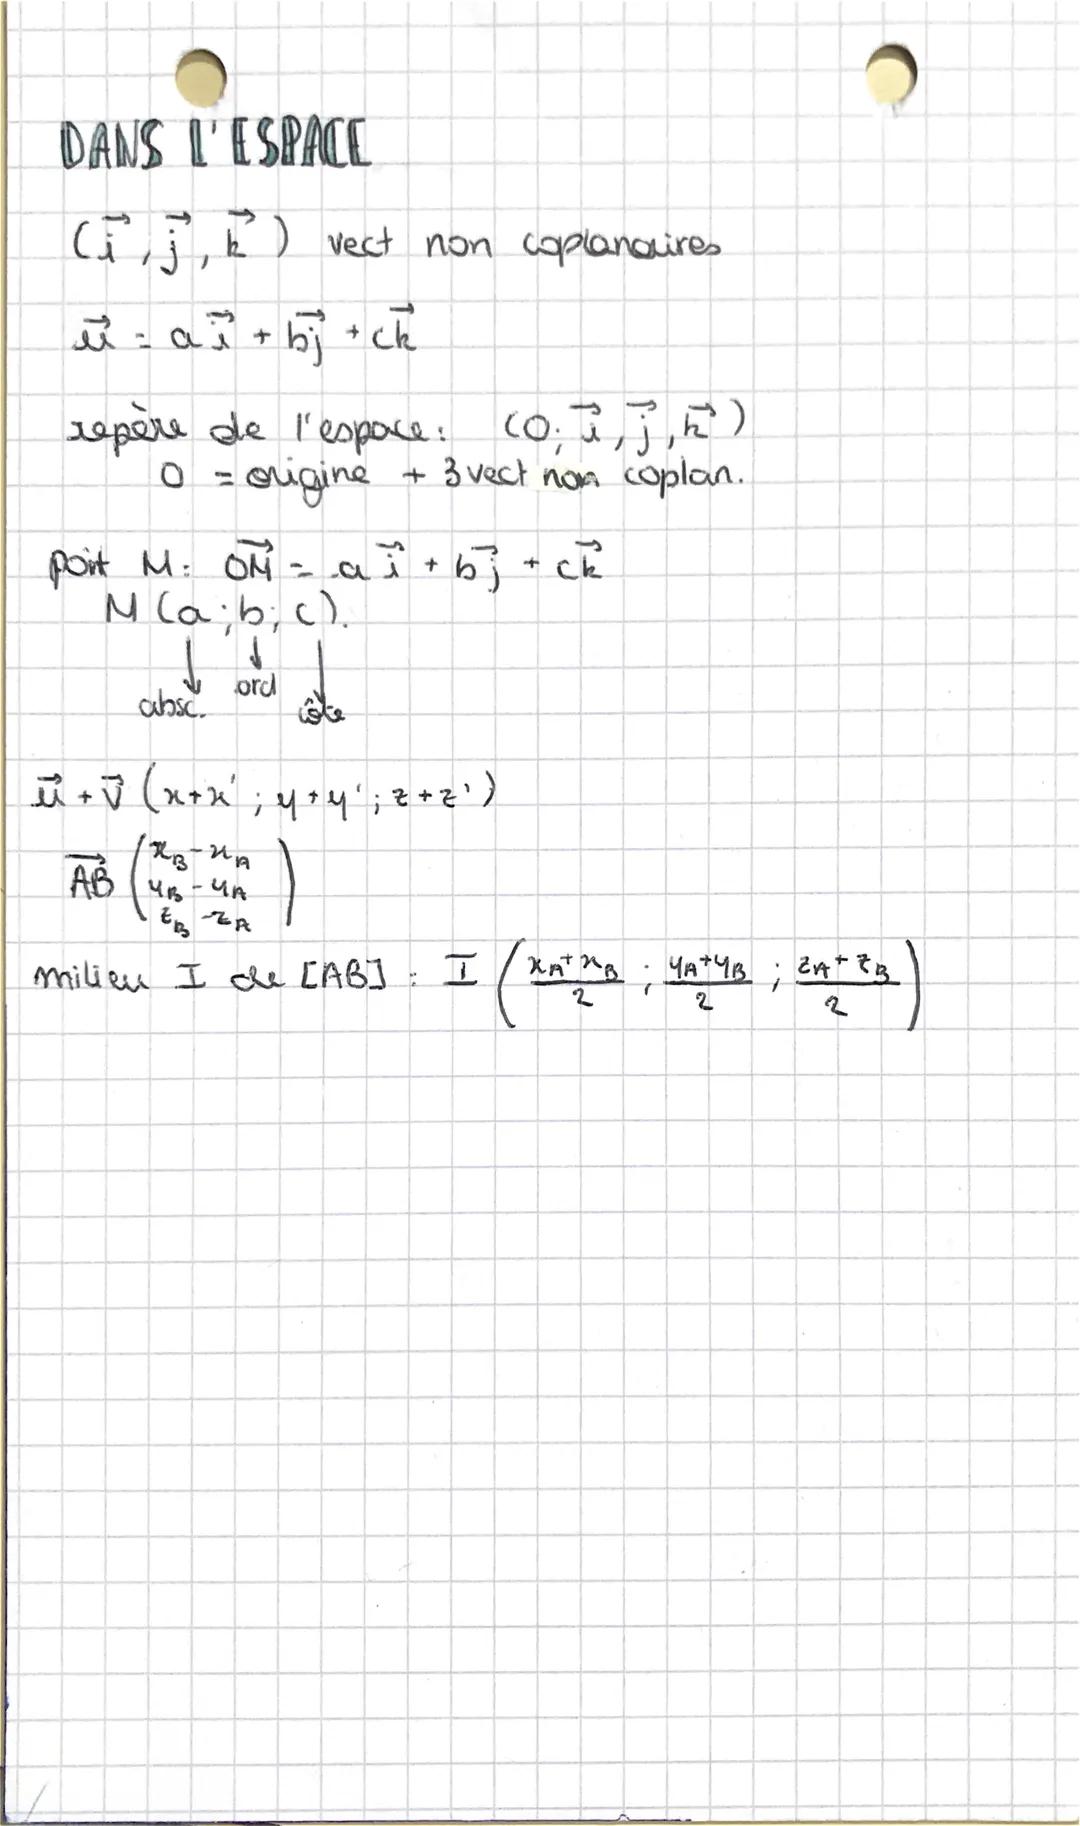 spi maths
vecteurs droites et plans de l'espace (1)
VECTEURS
Vecteur AB direction: droit CAB)
AB+
1.
AA:0
(vecteur nul)
·
si AB =D² ABCD est